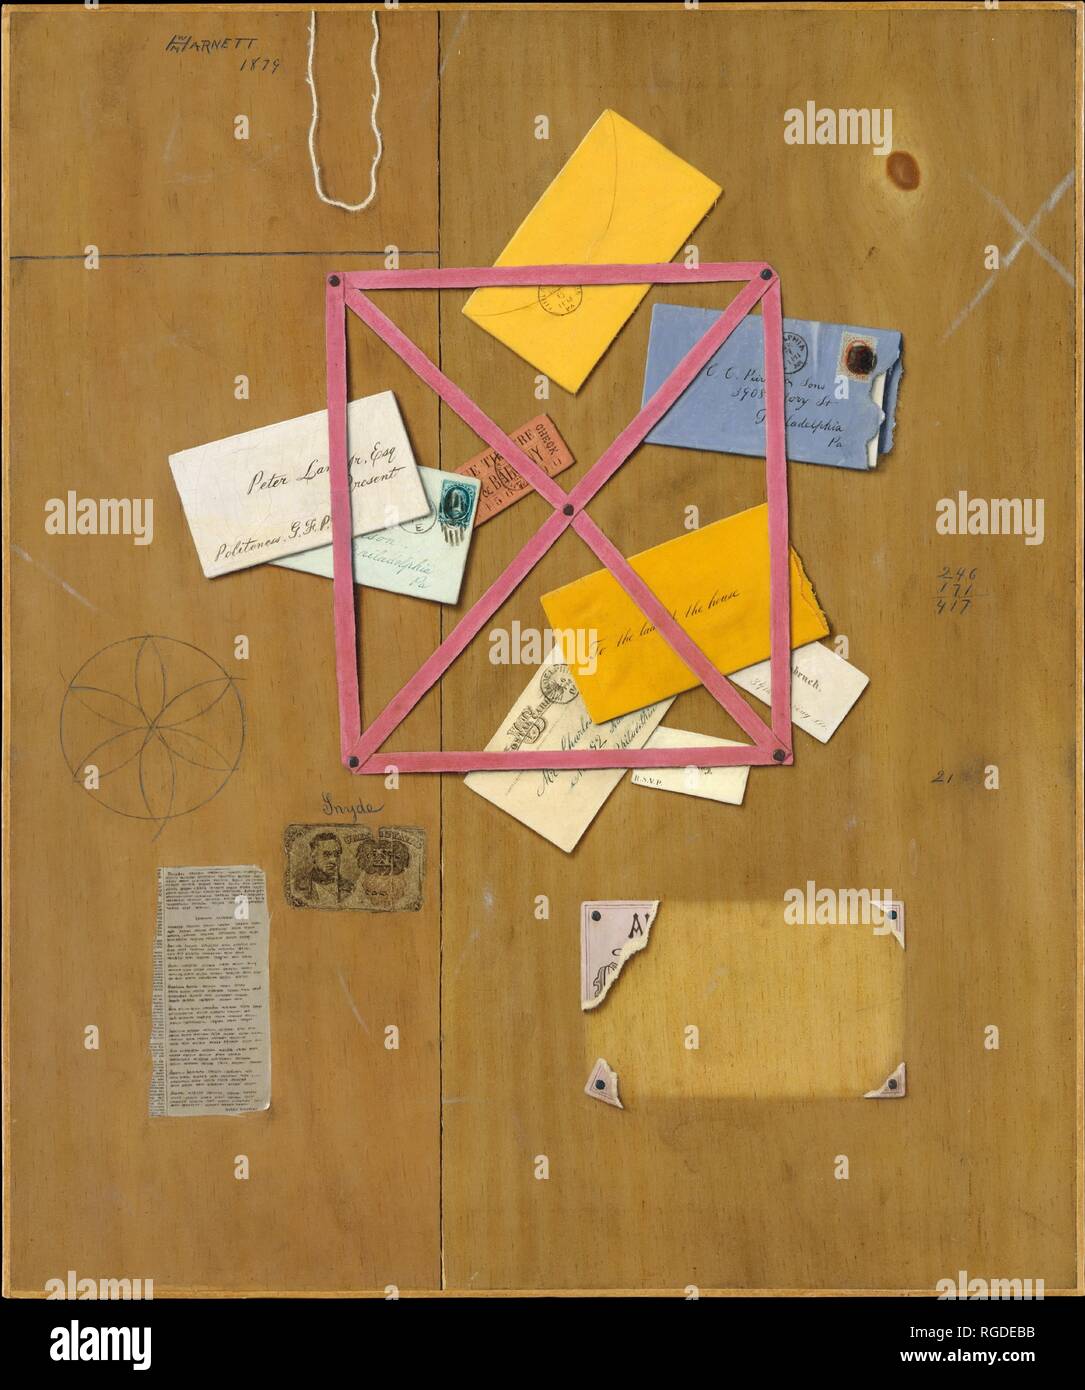 La lettre de l'artiste Rack. Artiste : William Michael Harnett (1848-1892). Dimensions : 30 x 25 in. (76,2 x 63,5 cm). Date : 1879. C'est la première des deux 'connu Harnett' rack photos, un sujet qu'il et son contemporain John F. Peto a hérité de peintres hollandais du xviie siècle. Les panneaux de bois de l'arrière-plan, le ruban rose du rack, les cartes et les enveloppes qui sont rangés dans elle, et les morceaux de papier sont tous soigneusement délimitées. Bords de curling, de subtiles ombres et textures distinctif taquiner le spectateur en imaginant que tous les éléments peints sont réels. Un peu d'indice Banque D'Images